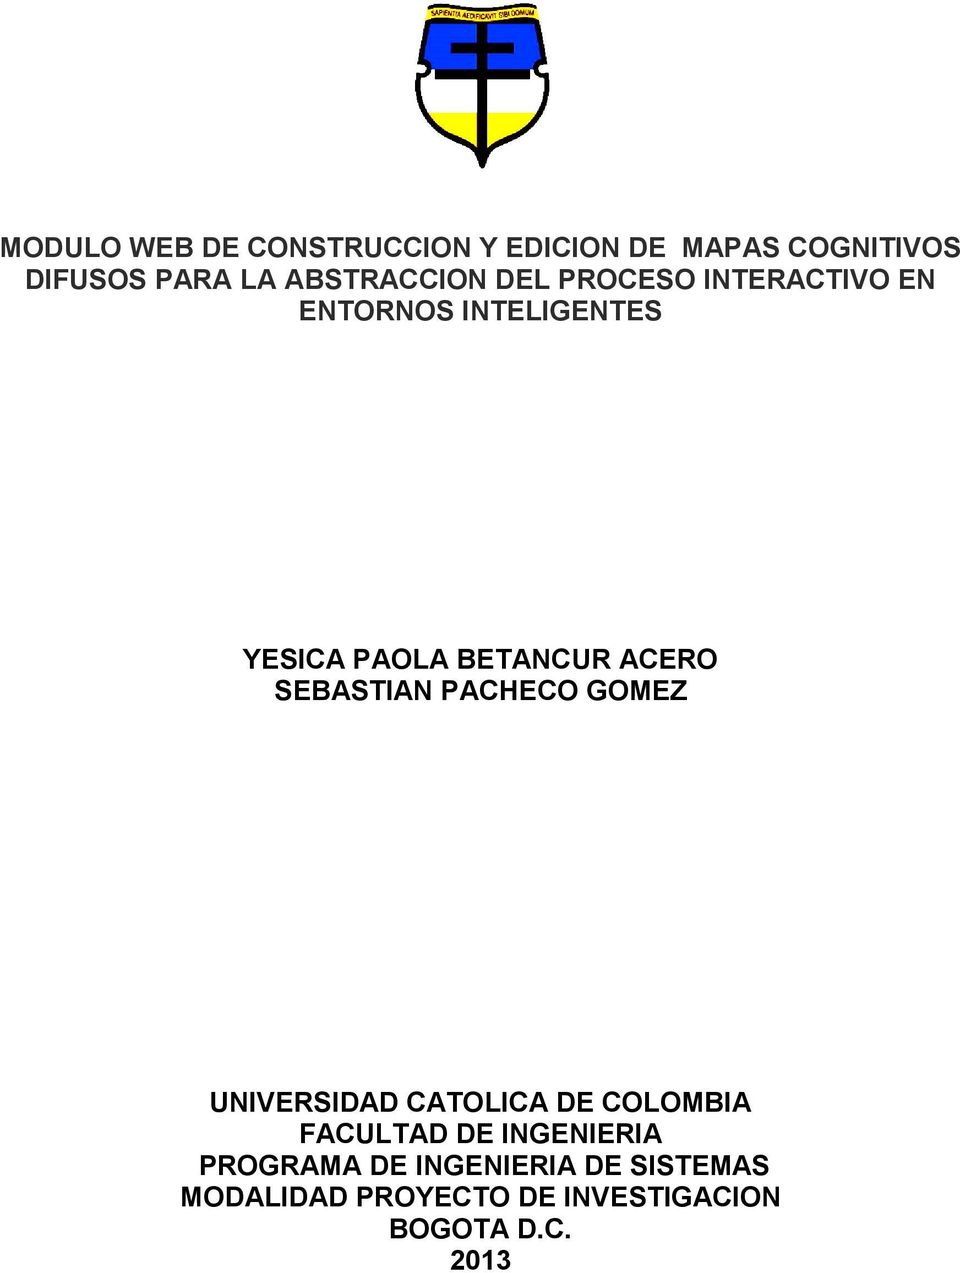 ACERO SEBASTIAN PACHECO GOMEZ UNIVERSIDAD CATOLICA DE COLOMBIA FACULTAD DE